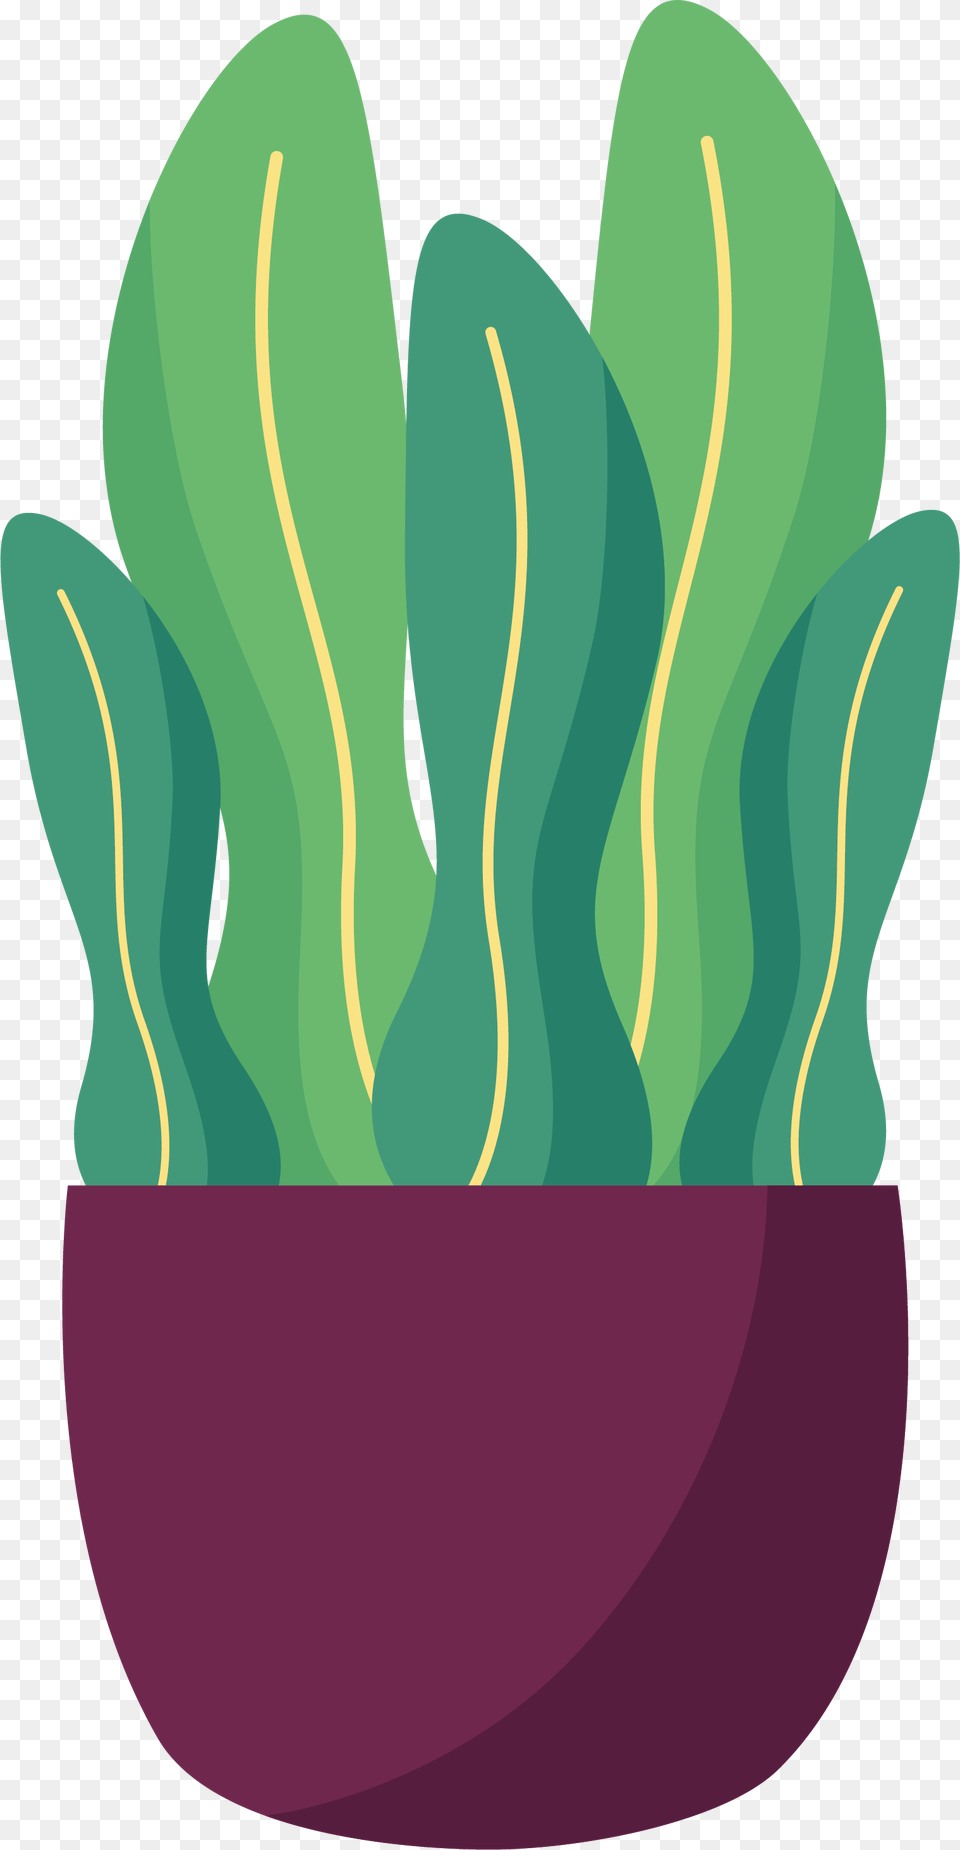 Decorative Plant Illustration, Leaf, Potted Plant, Food, Produce Png Image